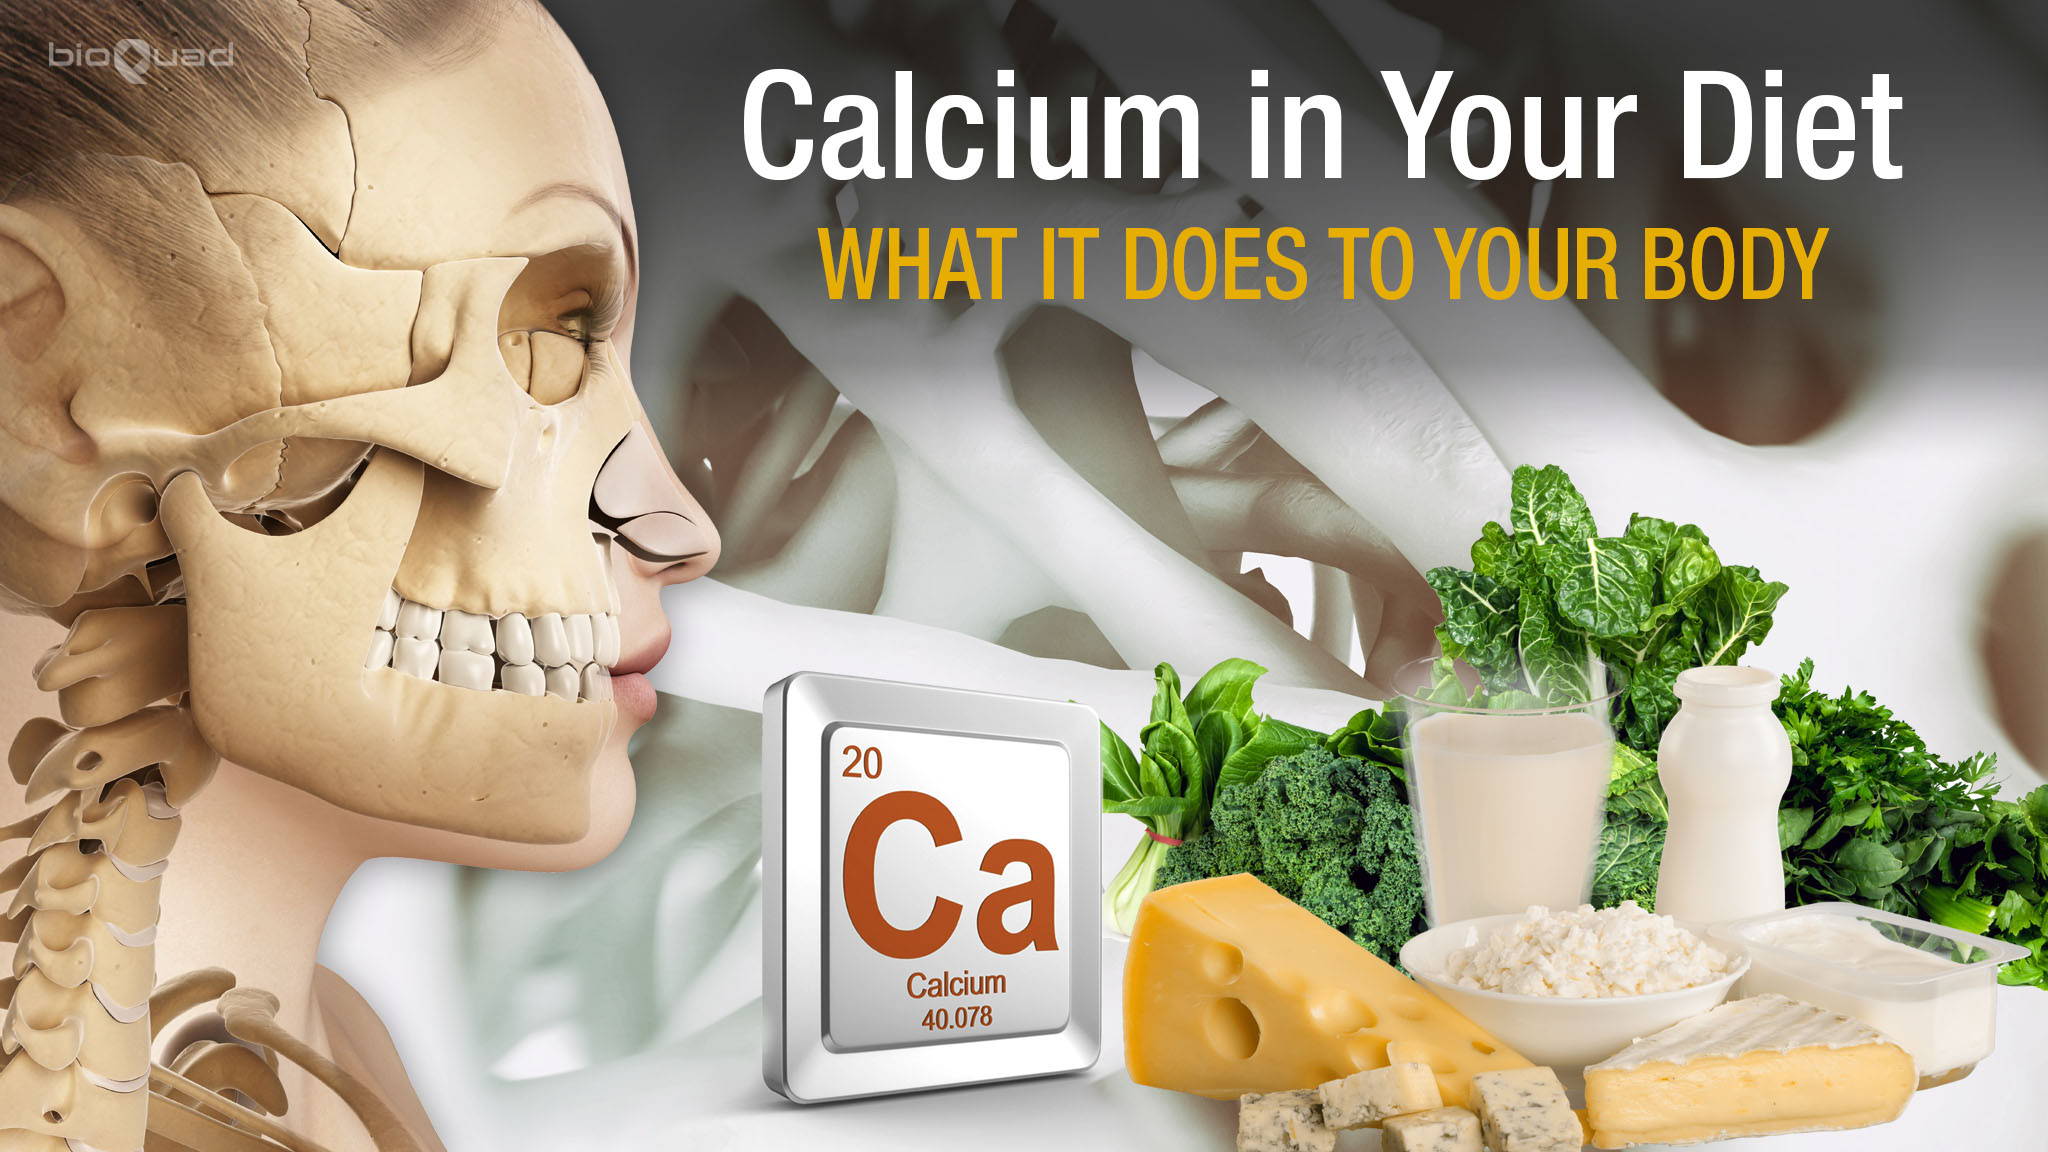 Calcium and bone health